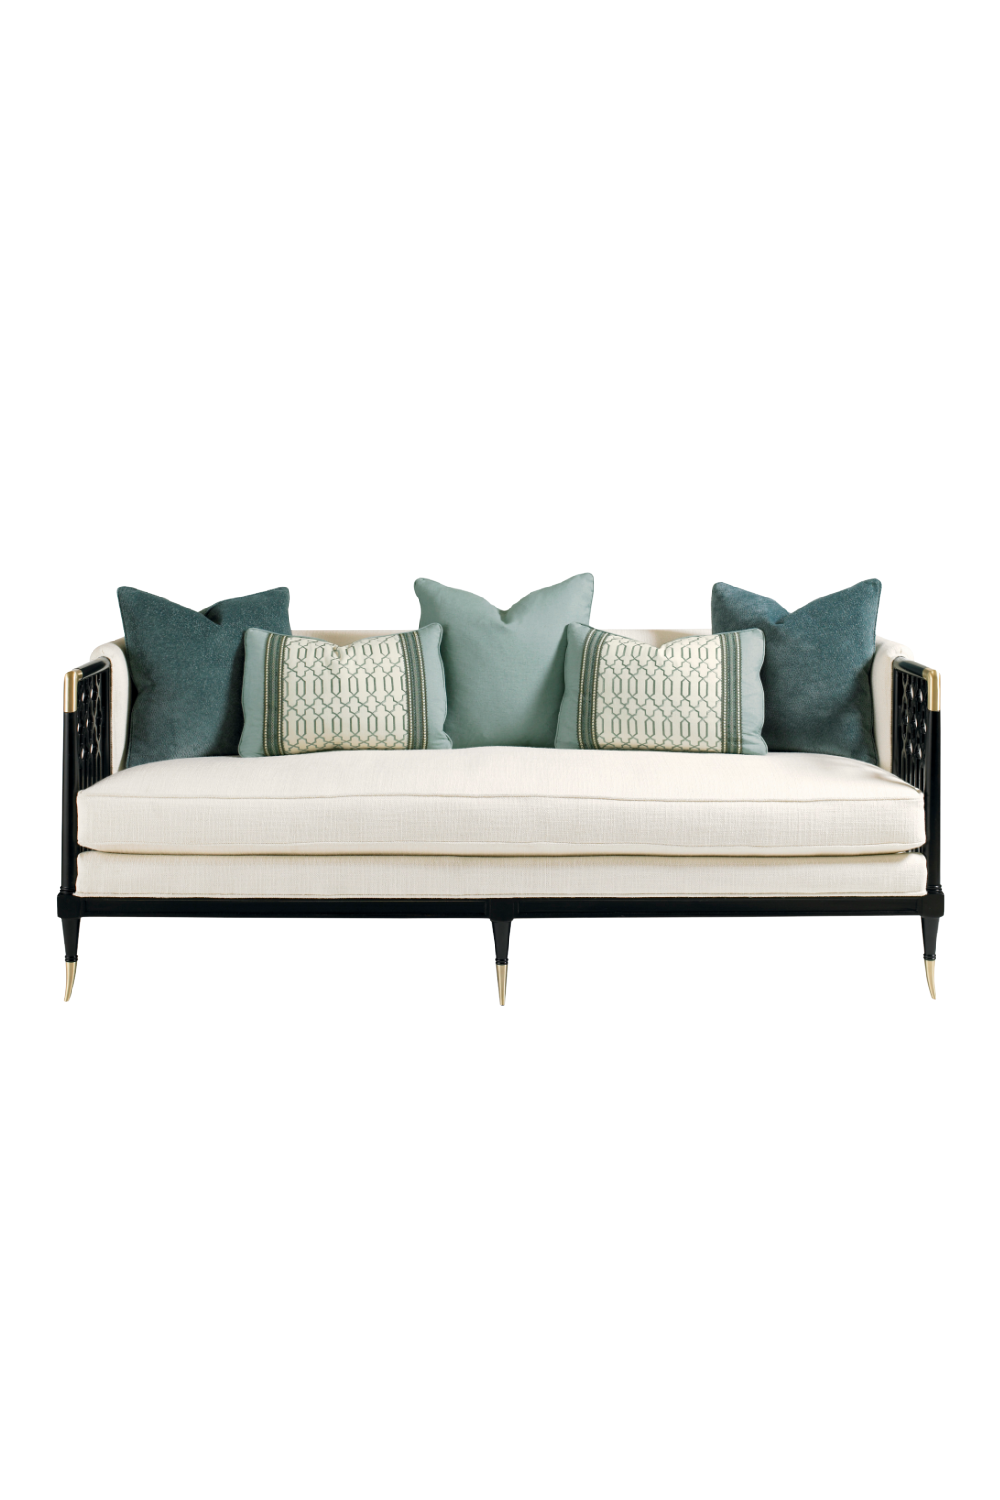 Cushioned Modern Sofa | Caracole Lattice Entertain You | Oroa.com